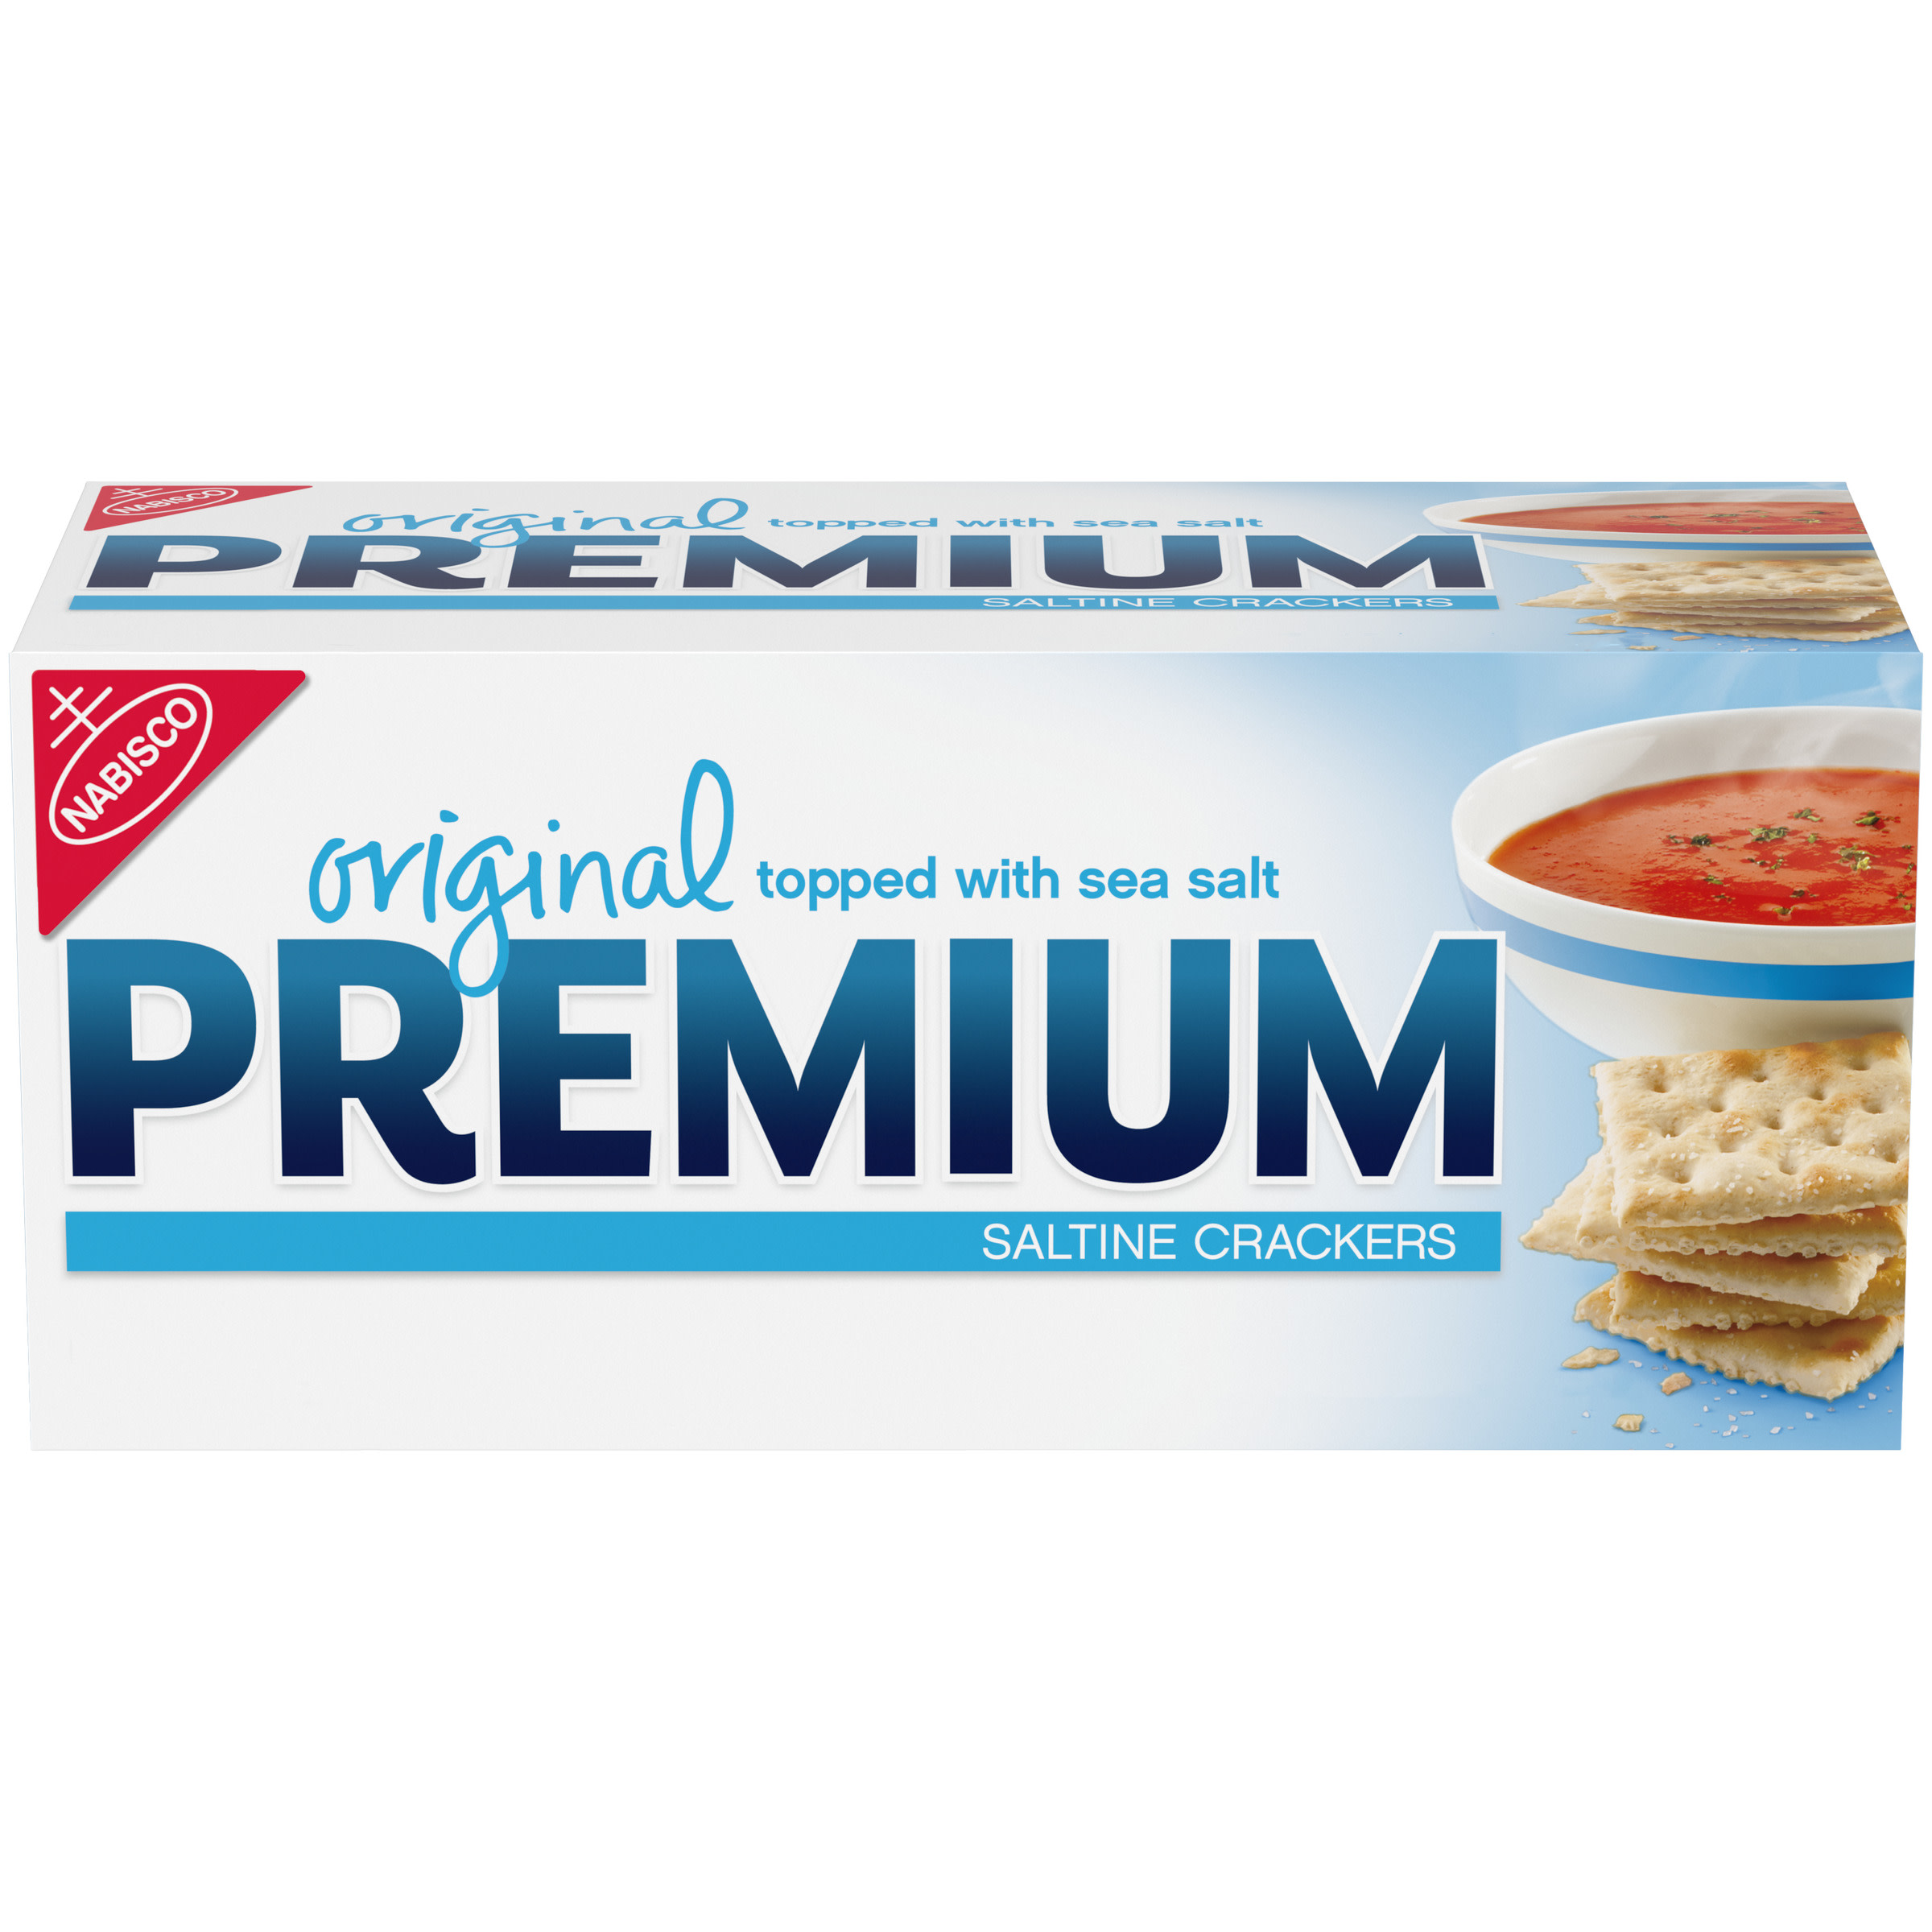 Premium Original Saltine Crackers, 16 oz - image 1 of 14